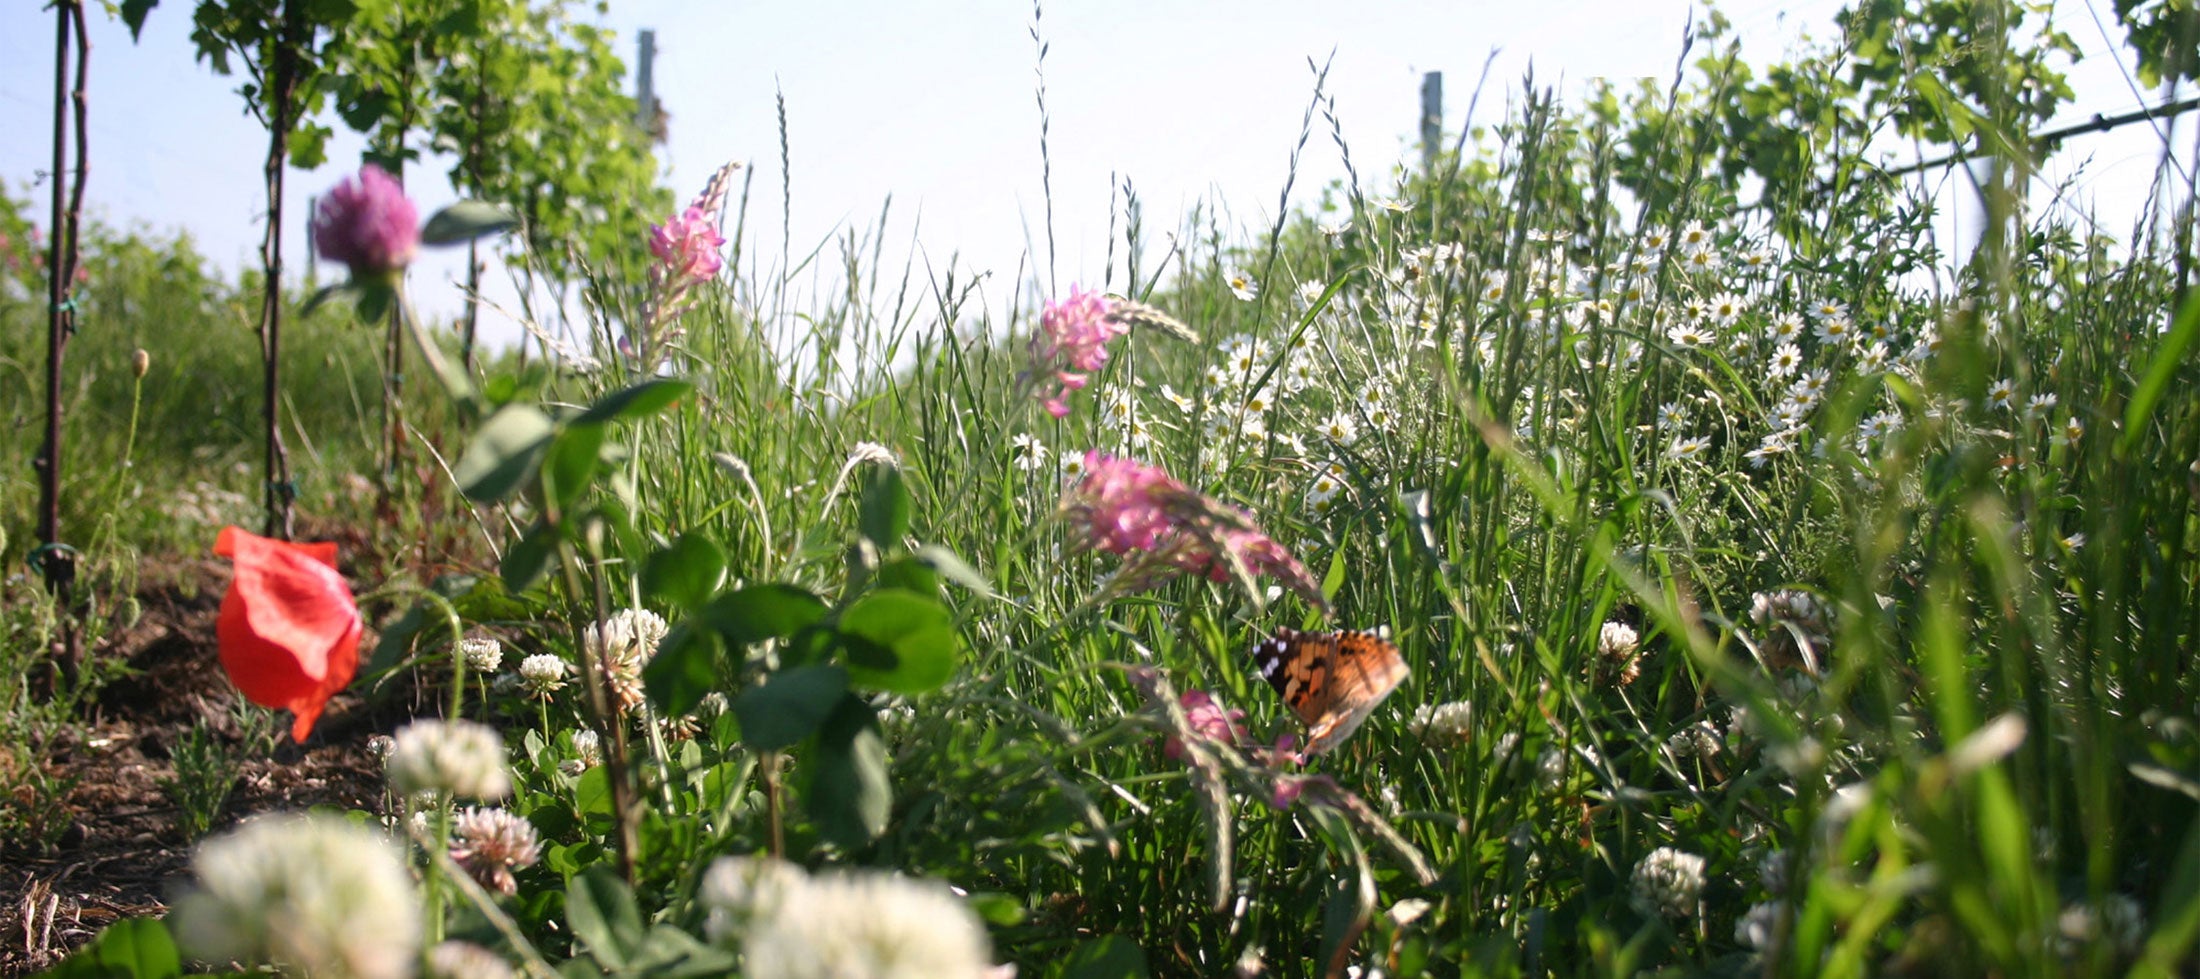 Flowers and butterflies thrive in the Meinklang biodynamic vineyard